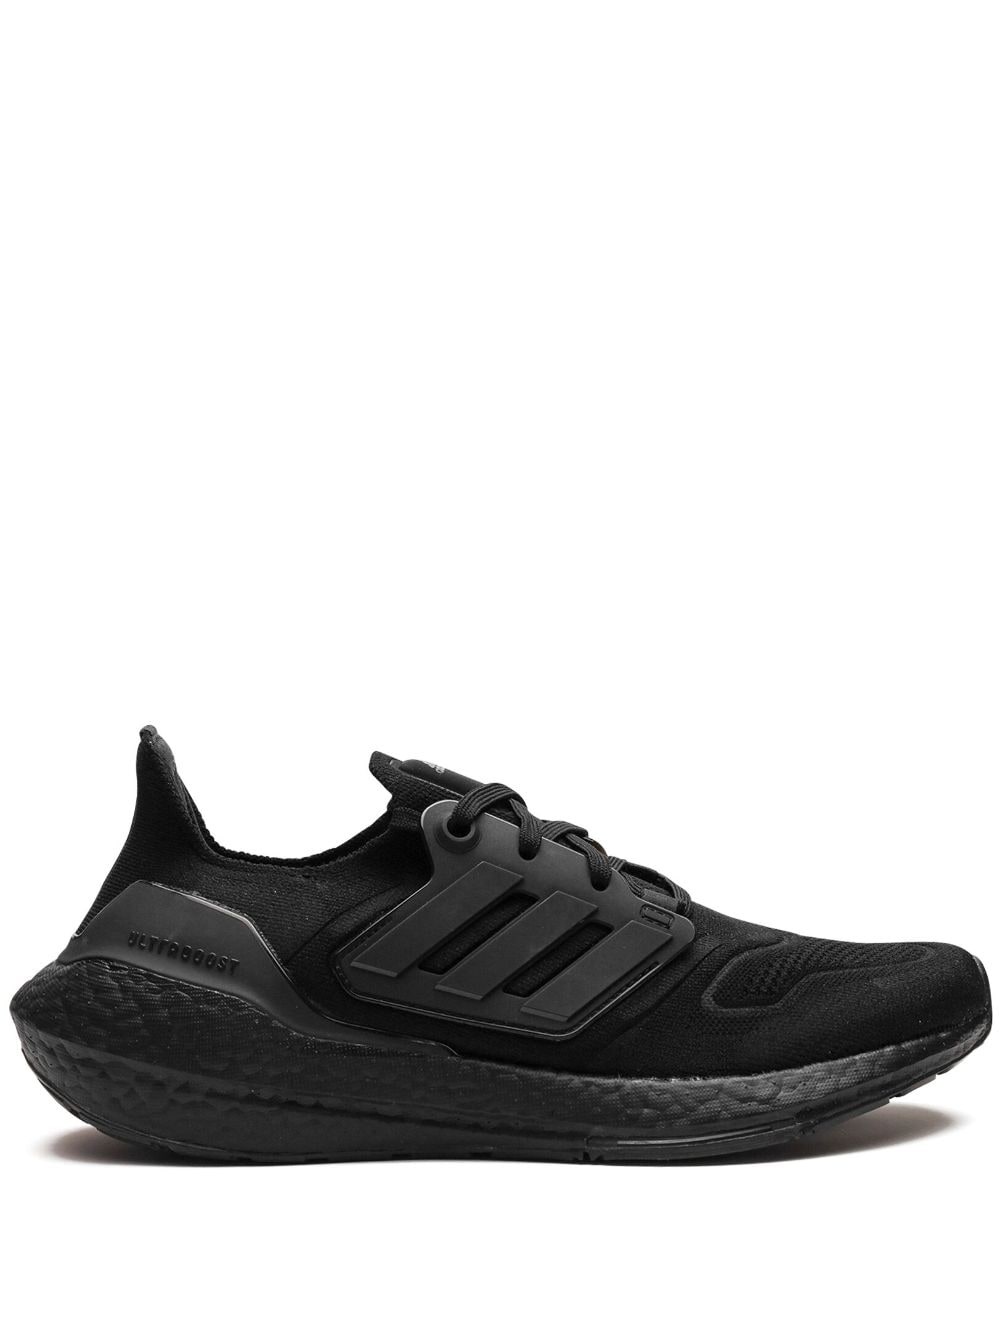 Ultraboost 22 "Triple Black" sneakers - 1